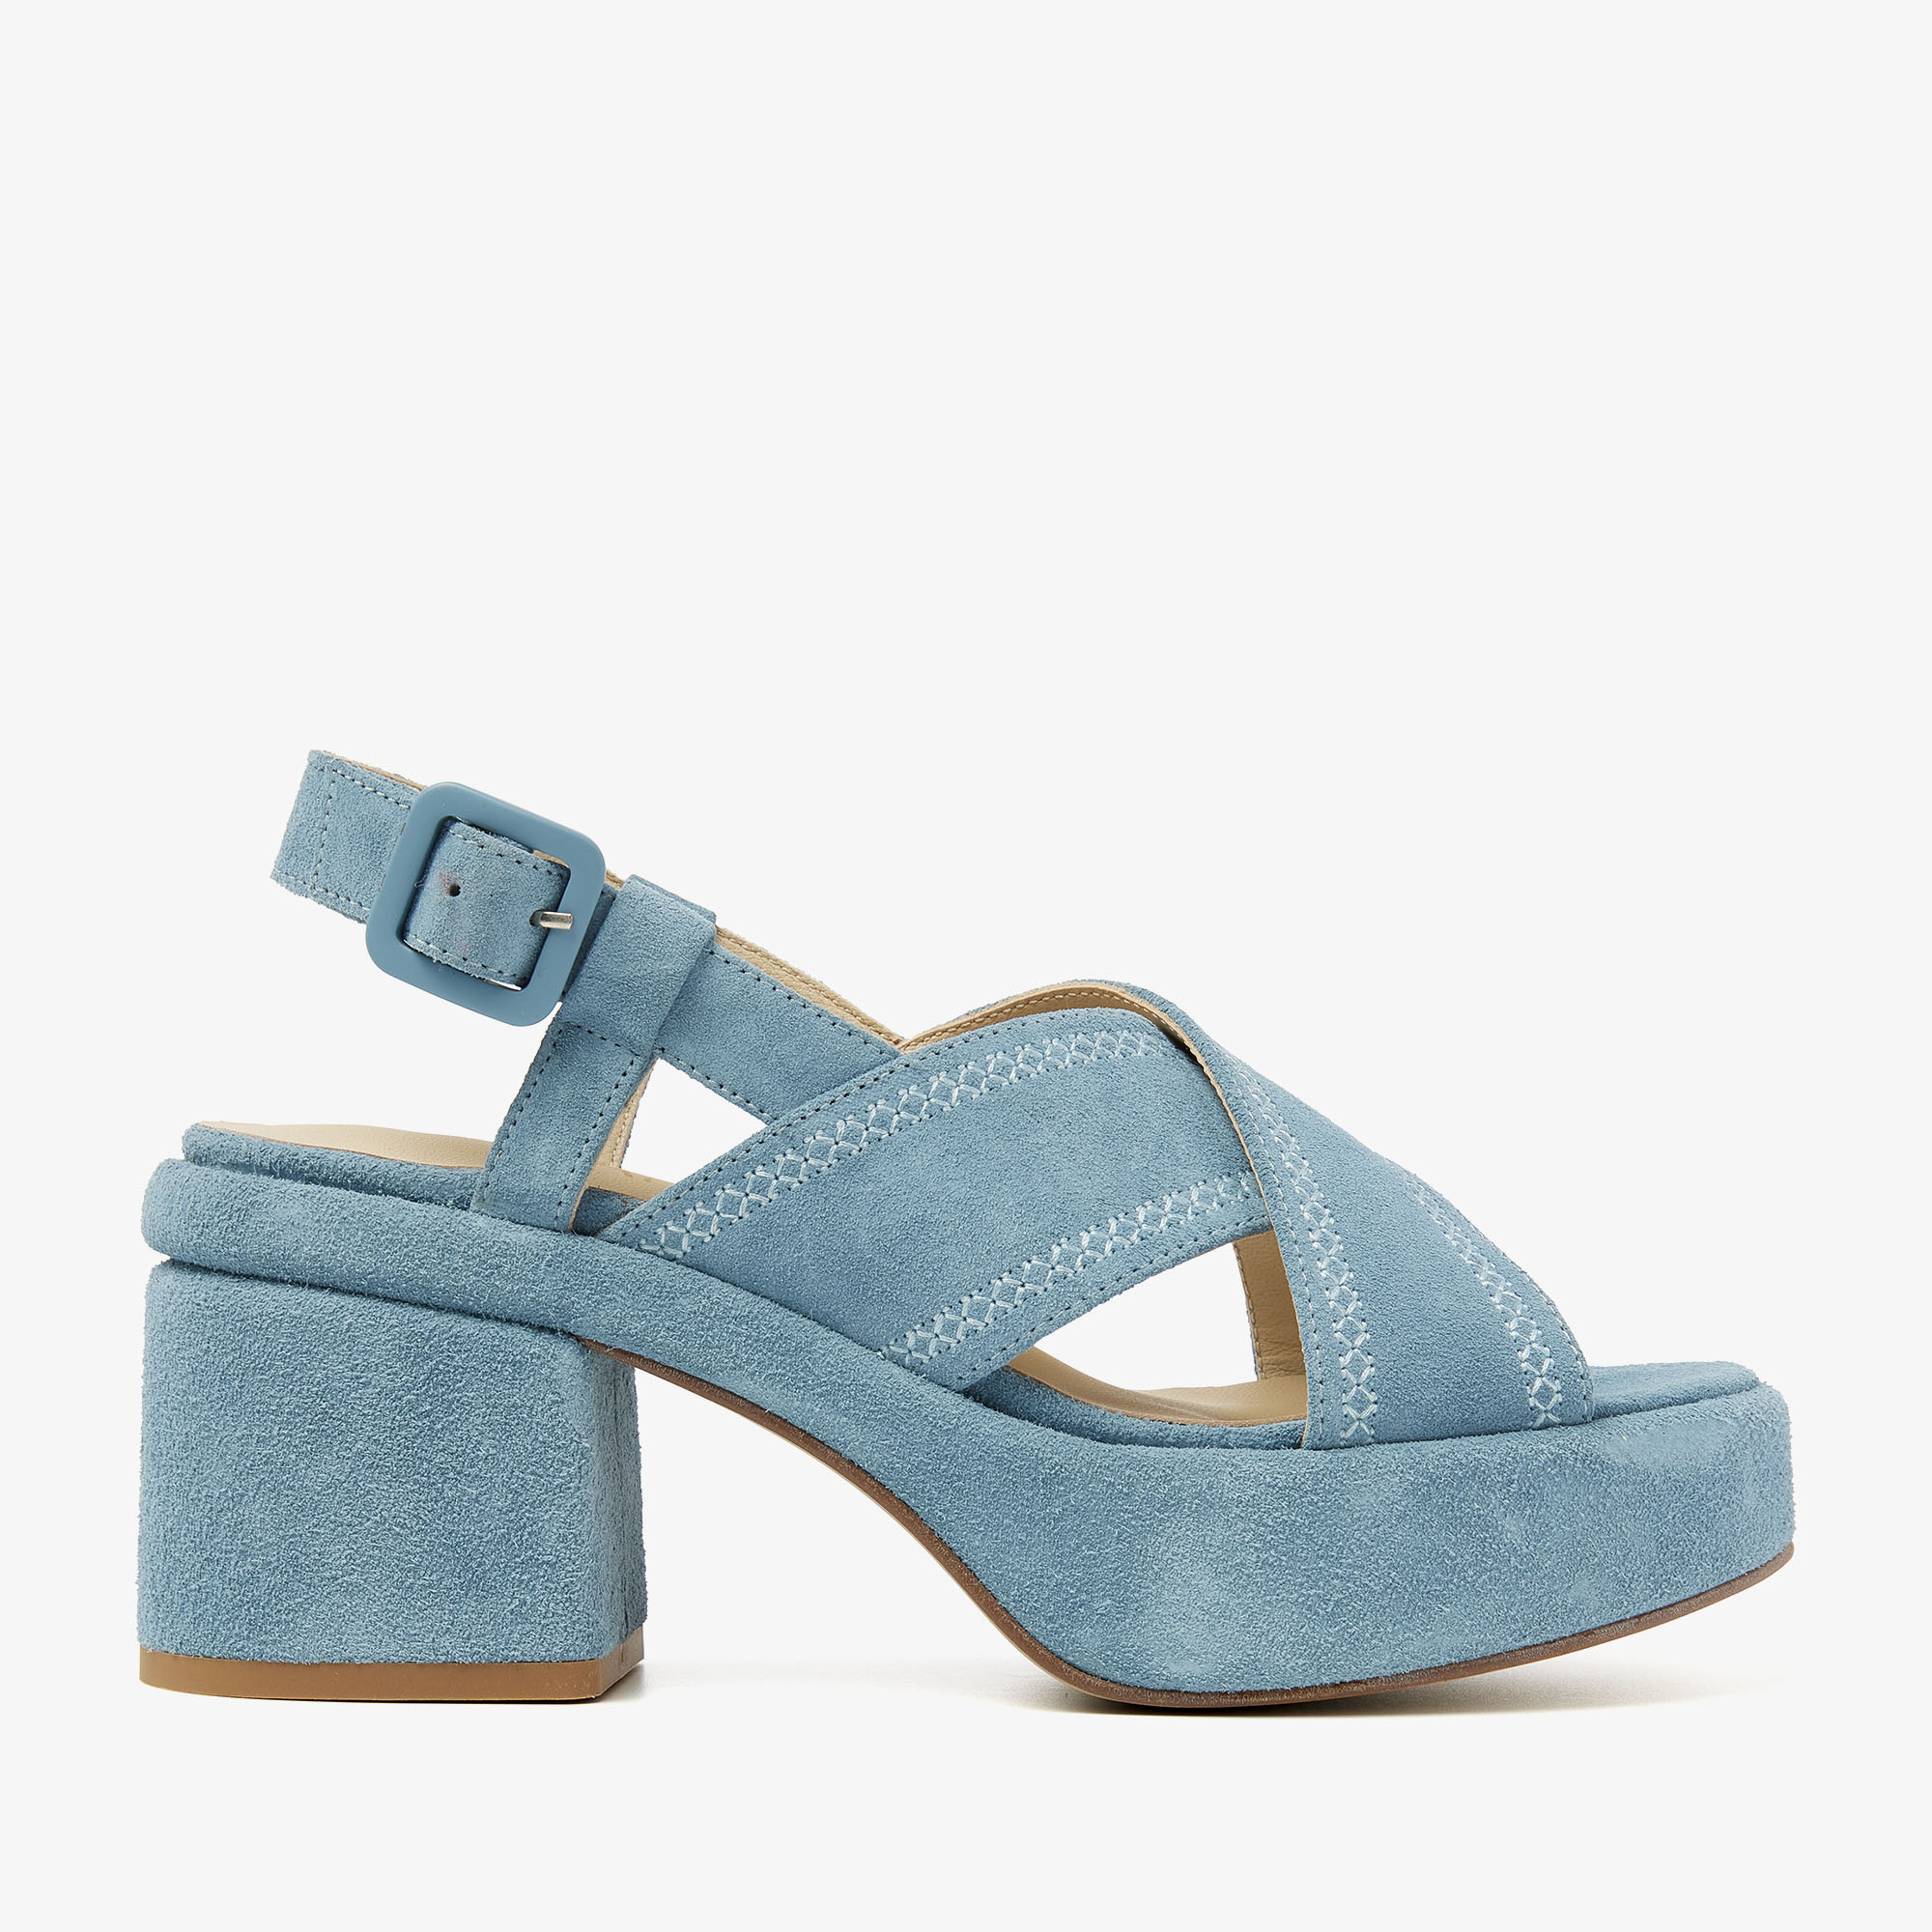 VIA VAI Elia Paisley blauwe sandalen dames - Suede